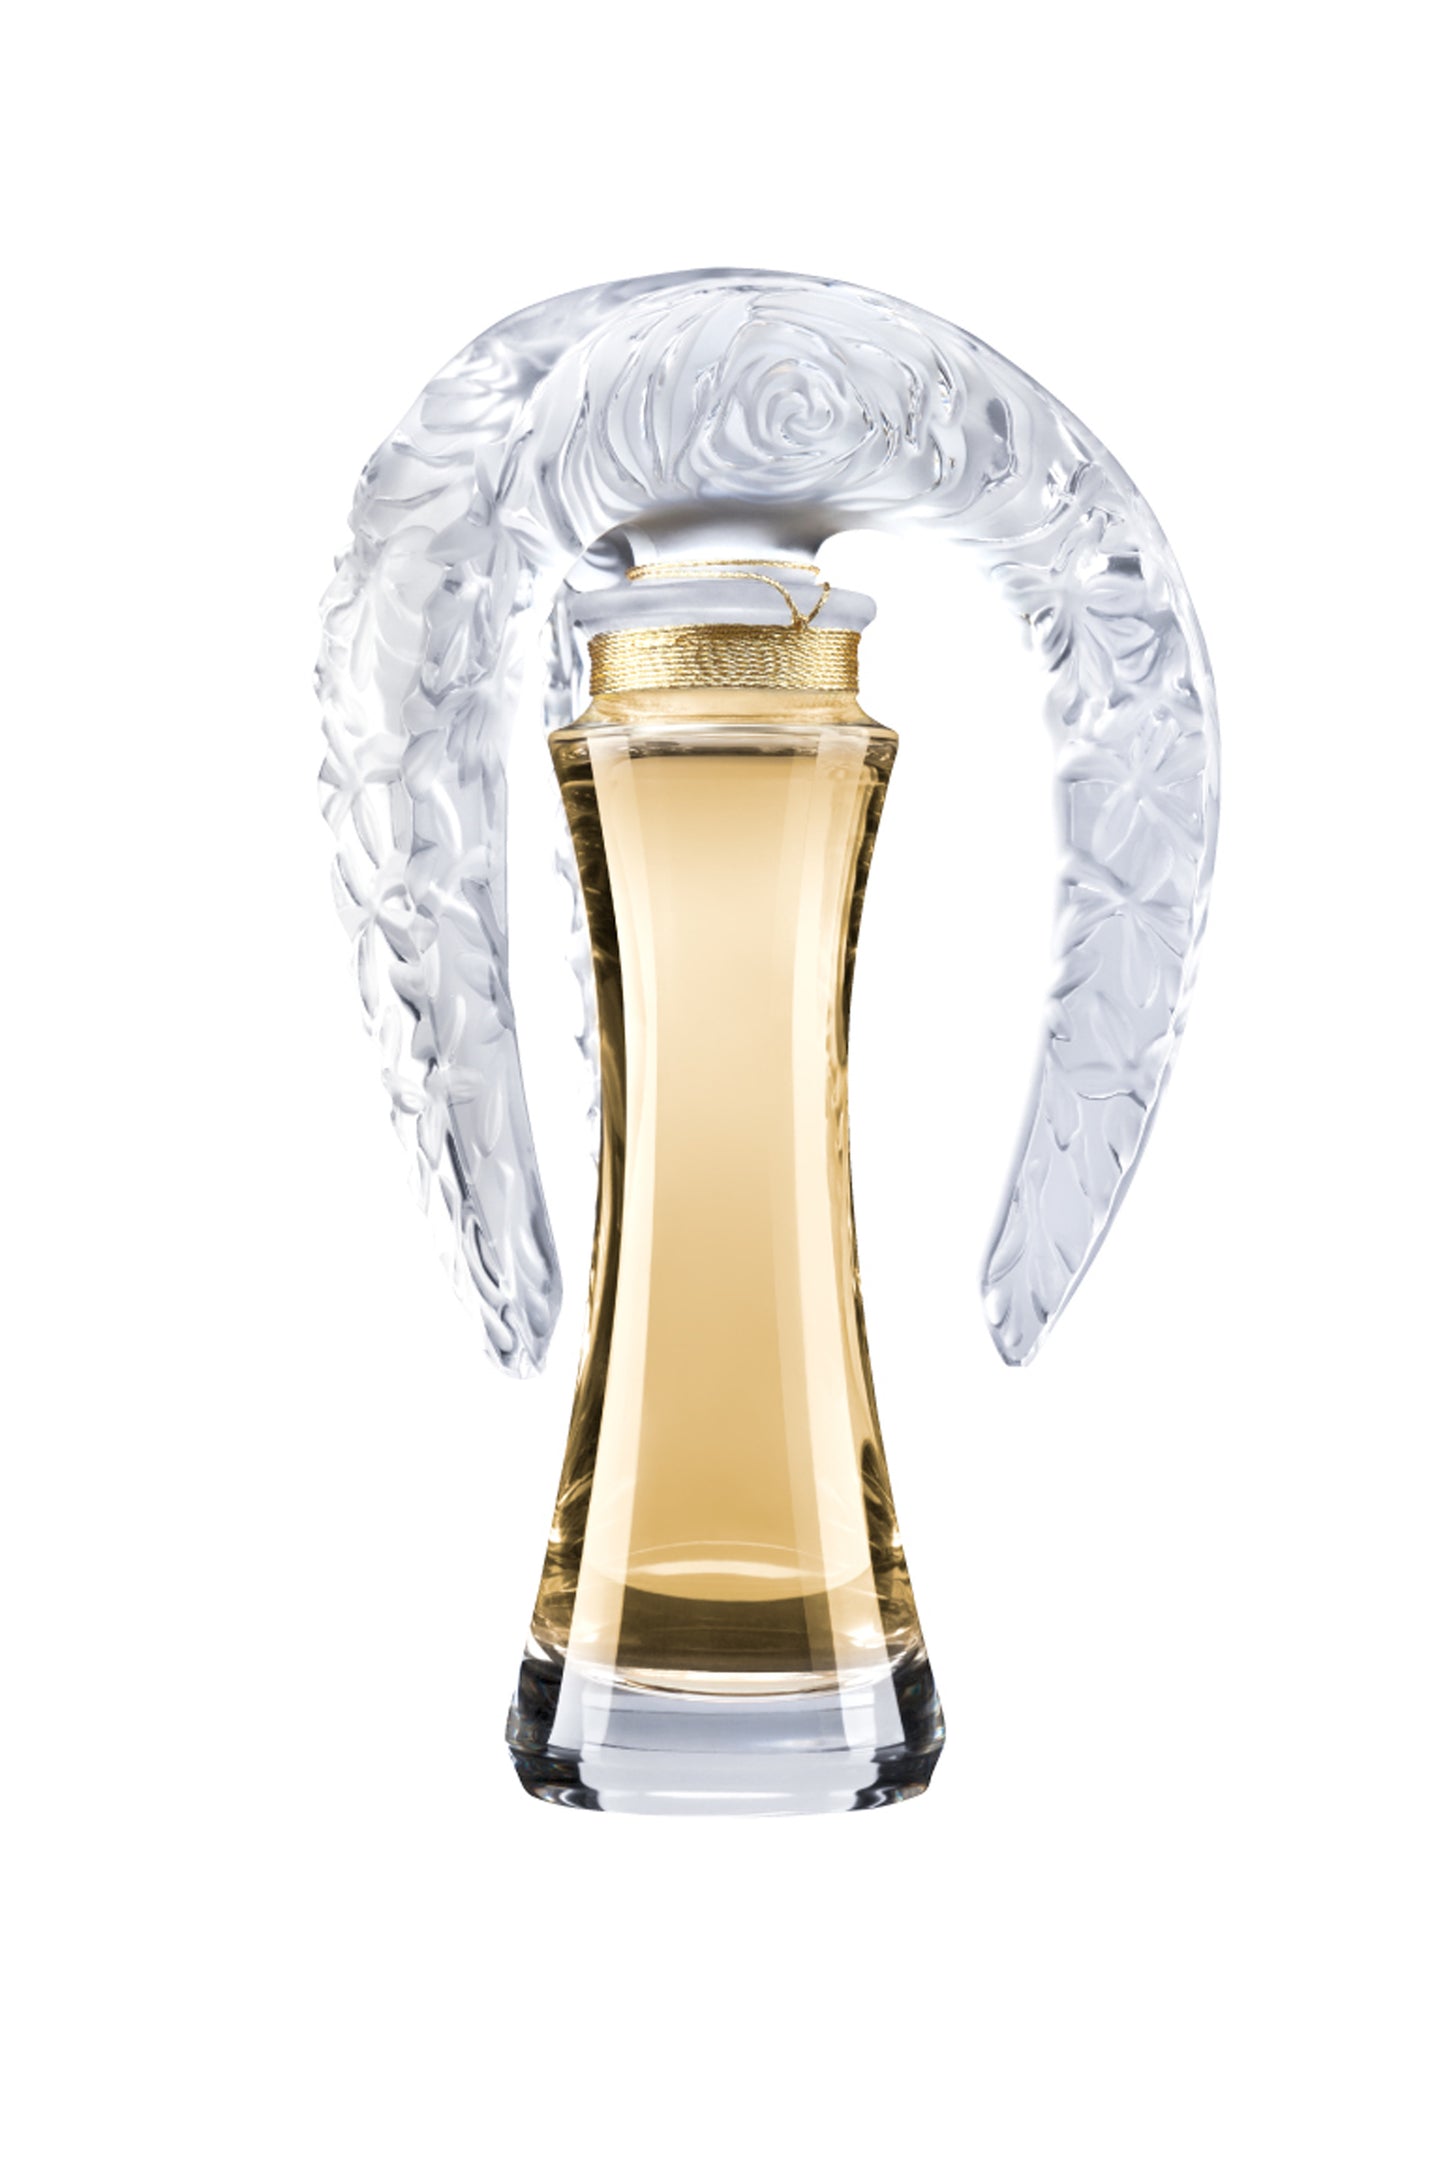 Lalique de Lalique 1.0 oz Limited Edition 2012 "Sillage" Crystal Extrait de Parfum